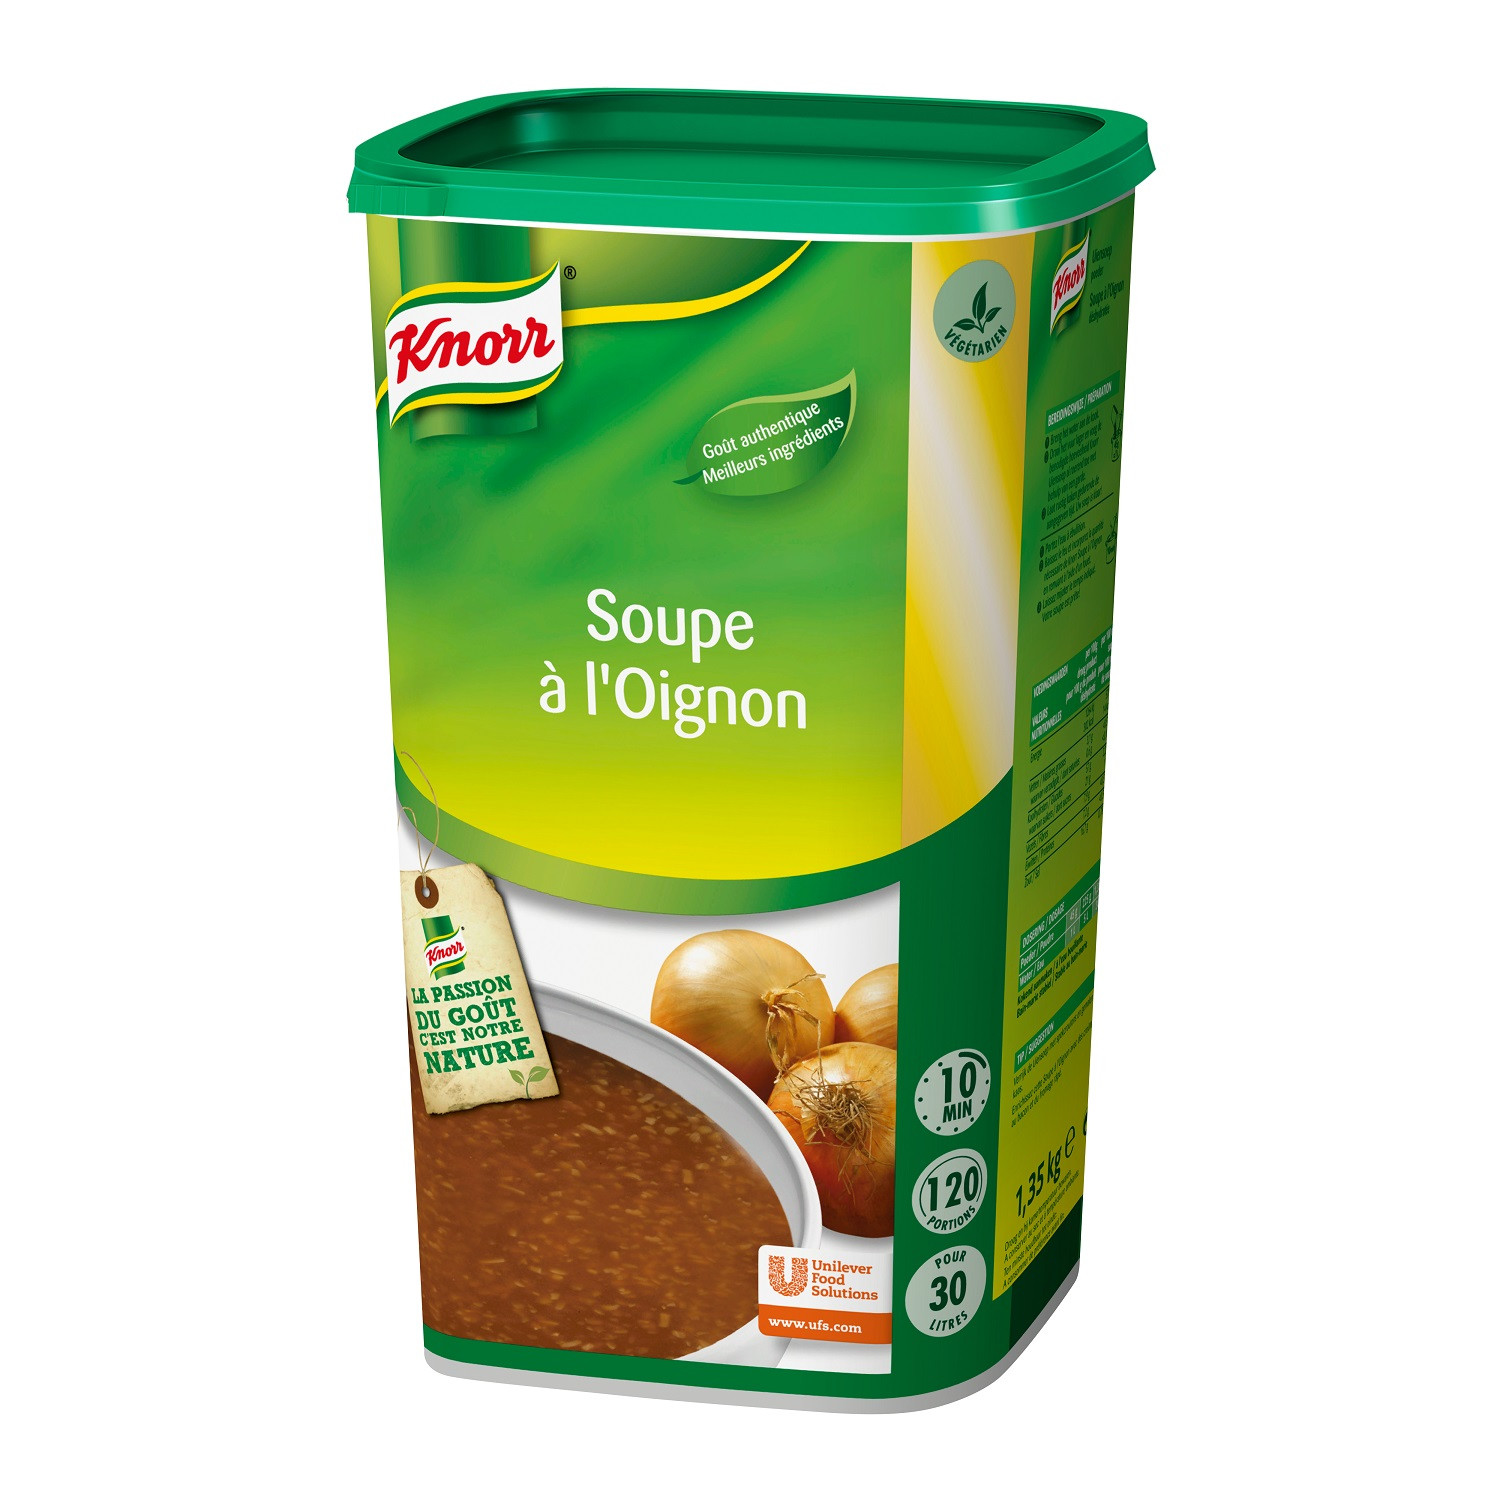 Knorr potage aux oignons 1.35kg Soupe de tous les Jours